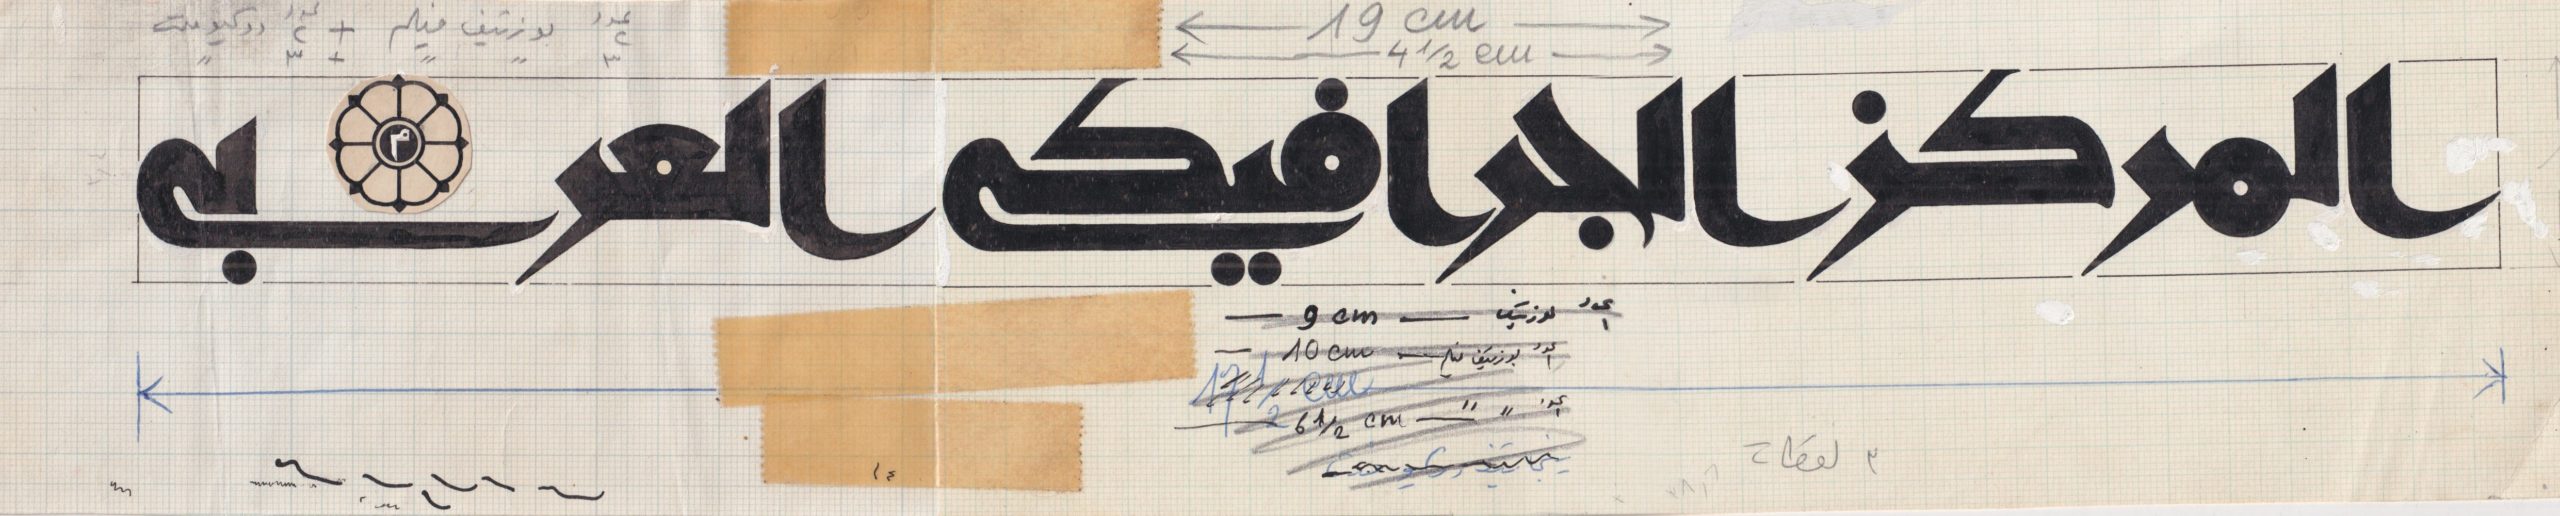 the arab graphic centre logo in arabic